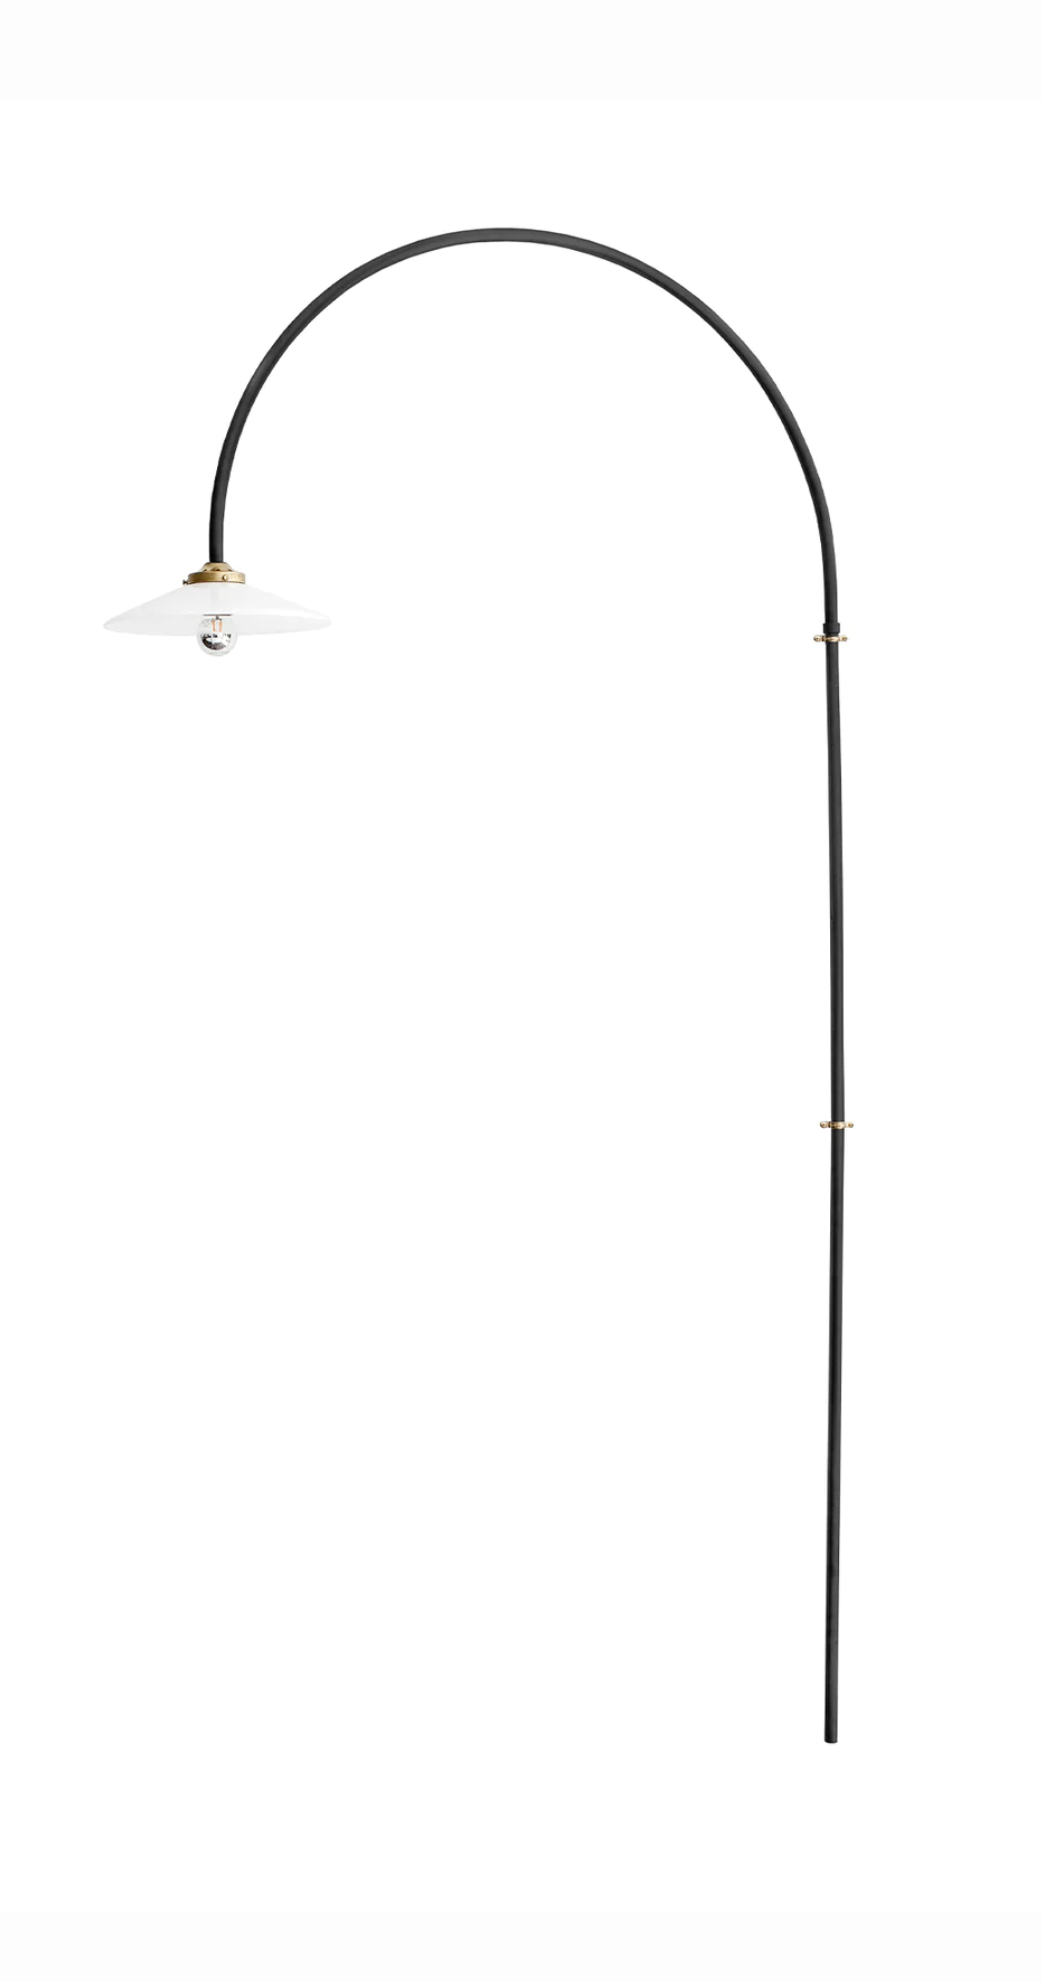 Hanging lamp No 02 / vegglampe sort